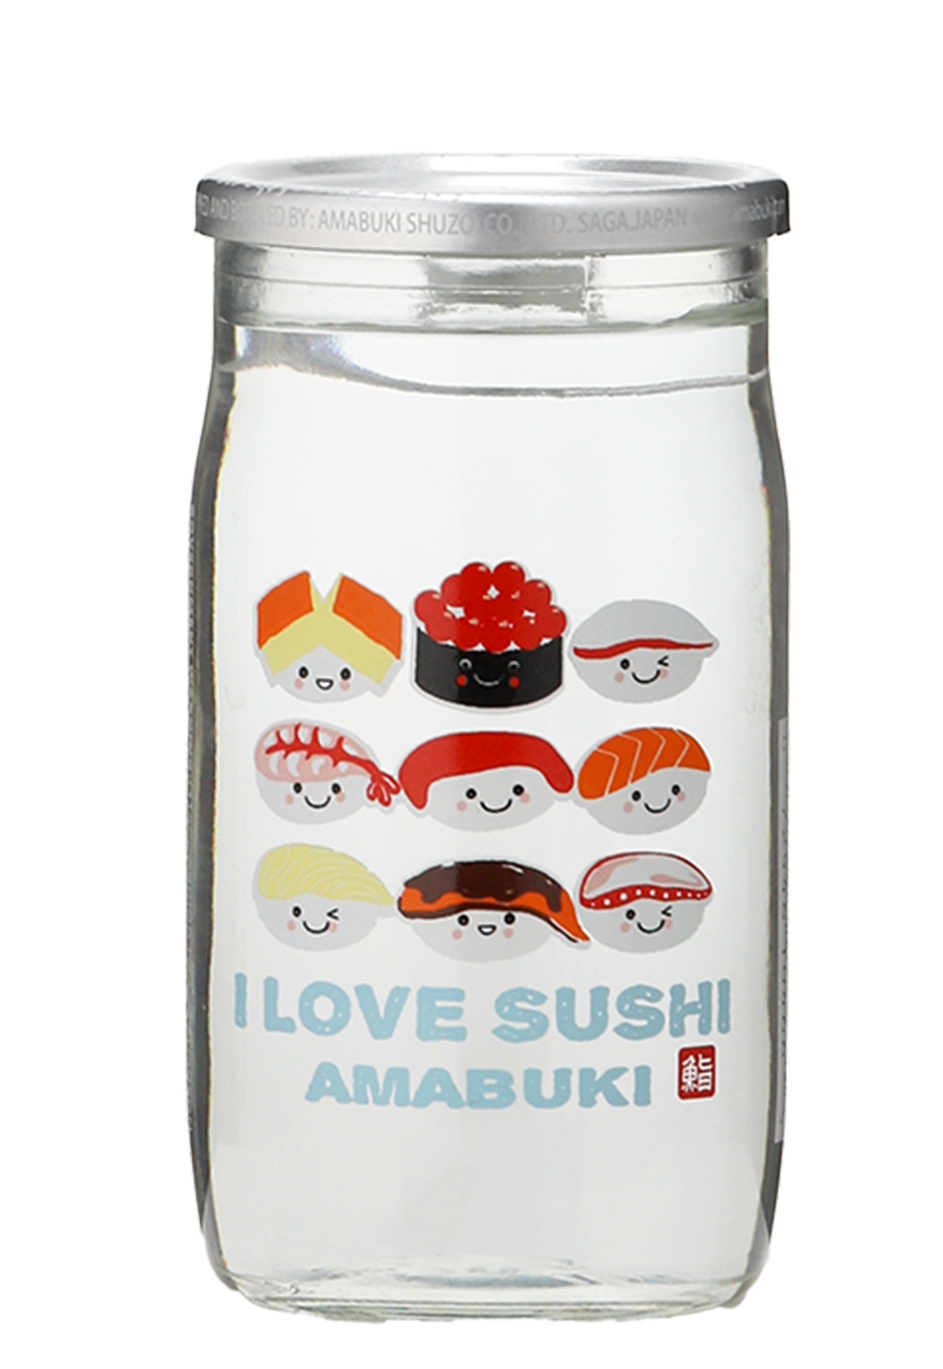 AMABUKI 'I LOVE SUSHI' JUNMAI GINJO